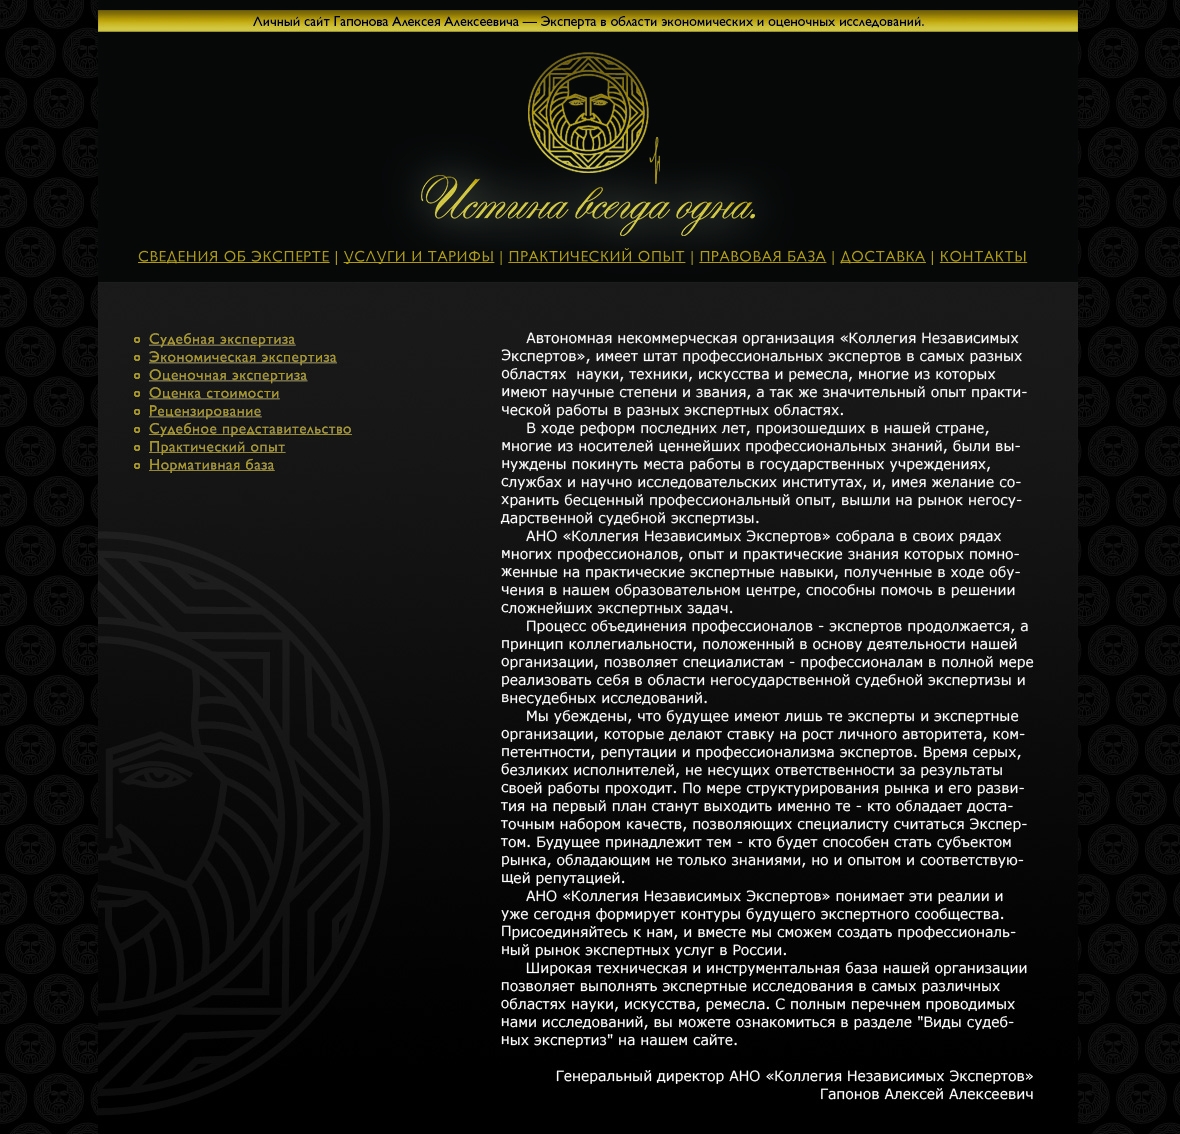 макет главной страницы сайта Алексея Гапонова